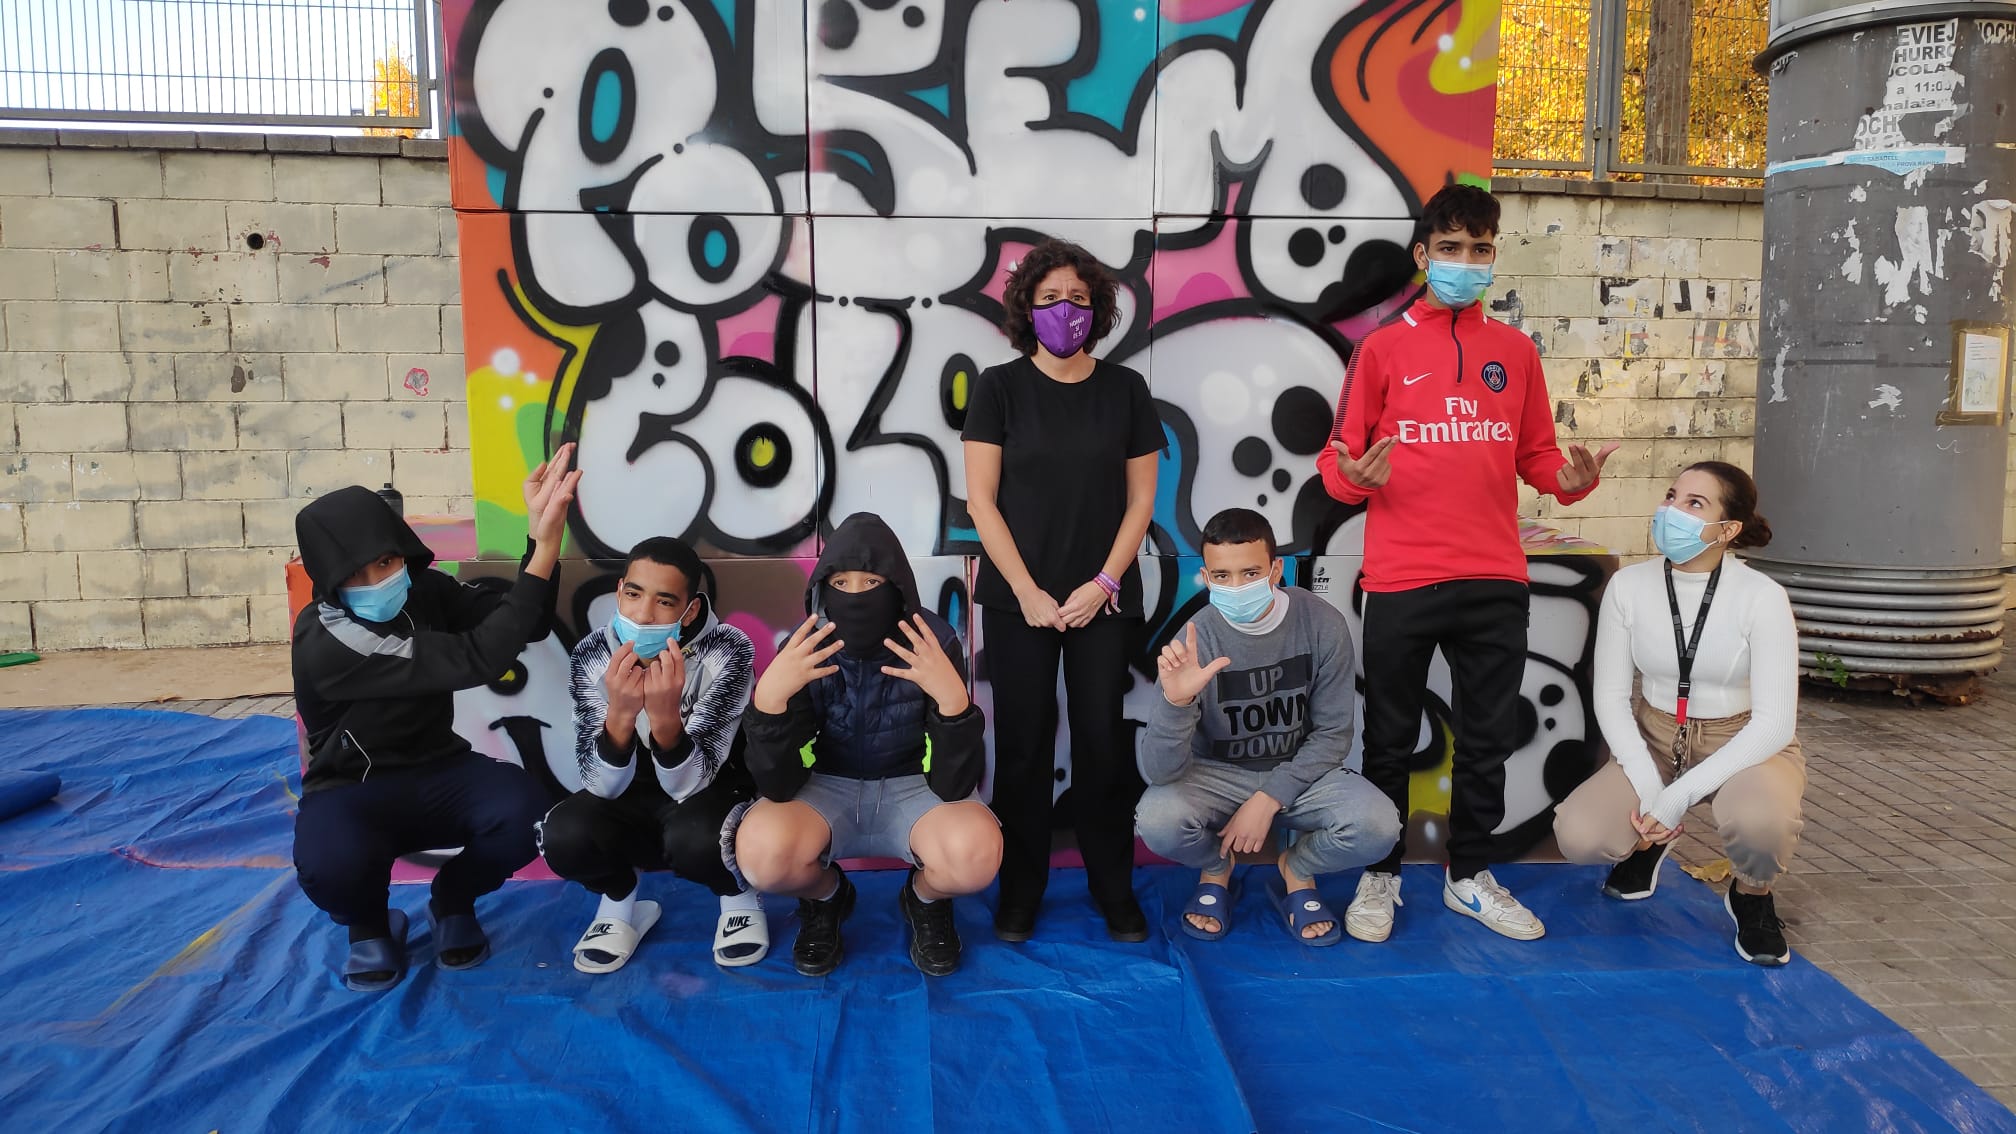 Joves que han col·laborat a pintar els grafitis | Pau Duran